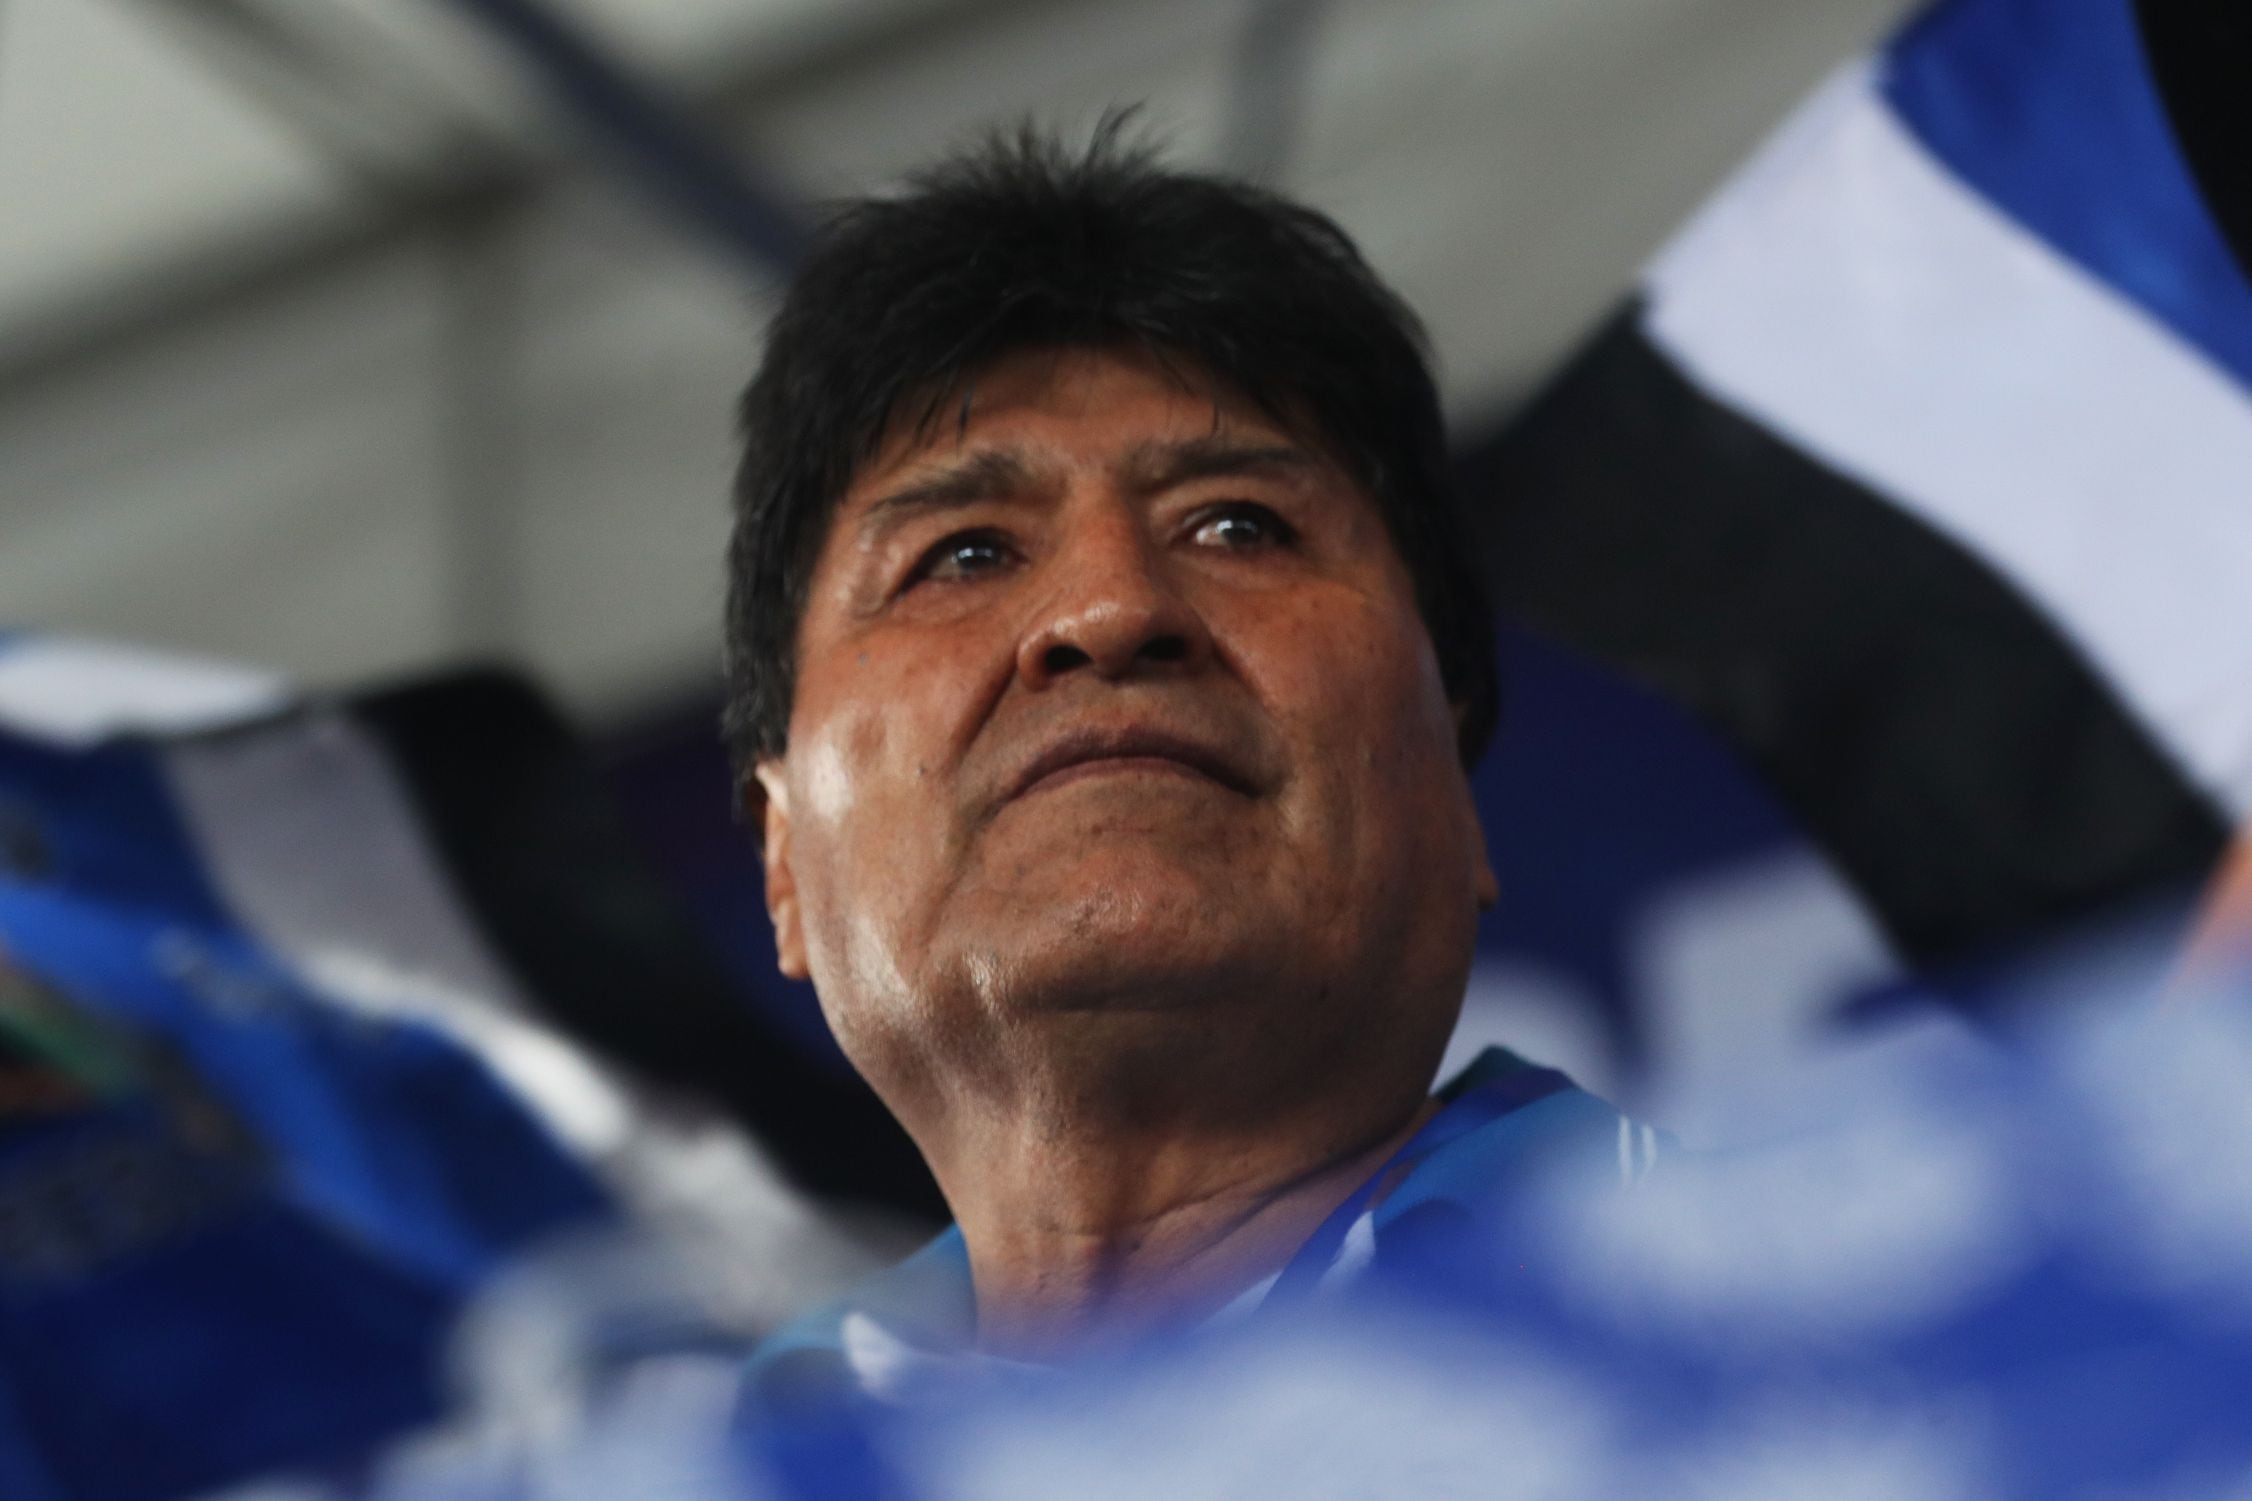 Evo Morales desafió a la Justicia boliviana y advirtió que será candidato “a las buenas o a las malas” para las elecciones de 2025 